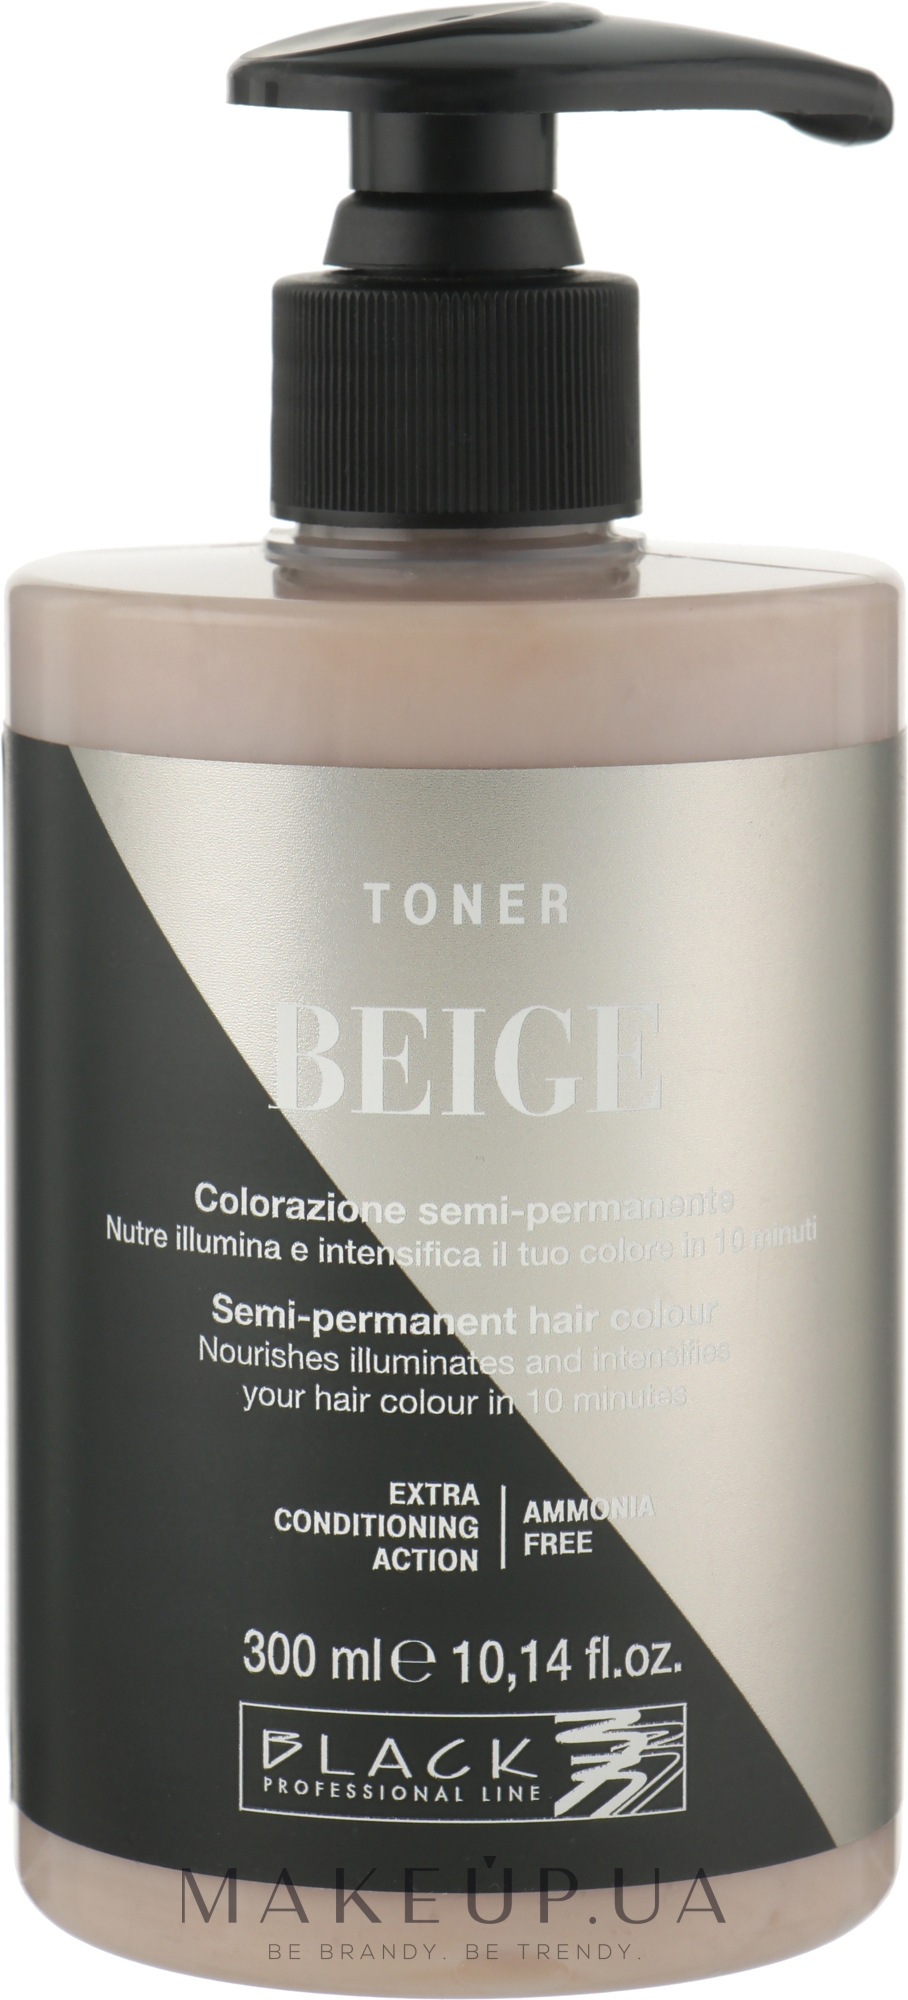 Тонер для волос - Black Professional Line Semi-Permanent Coloring Toner — фото Beige